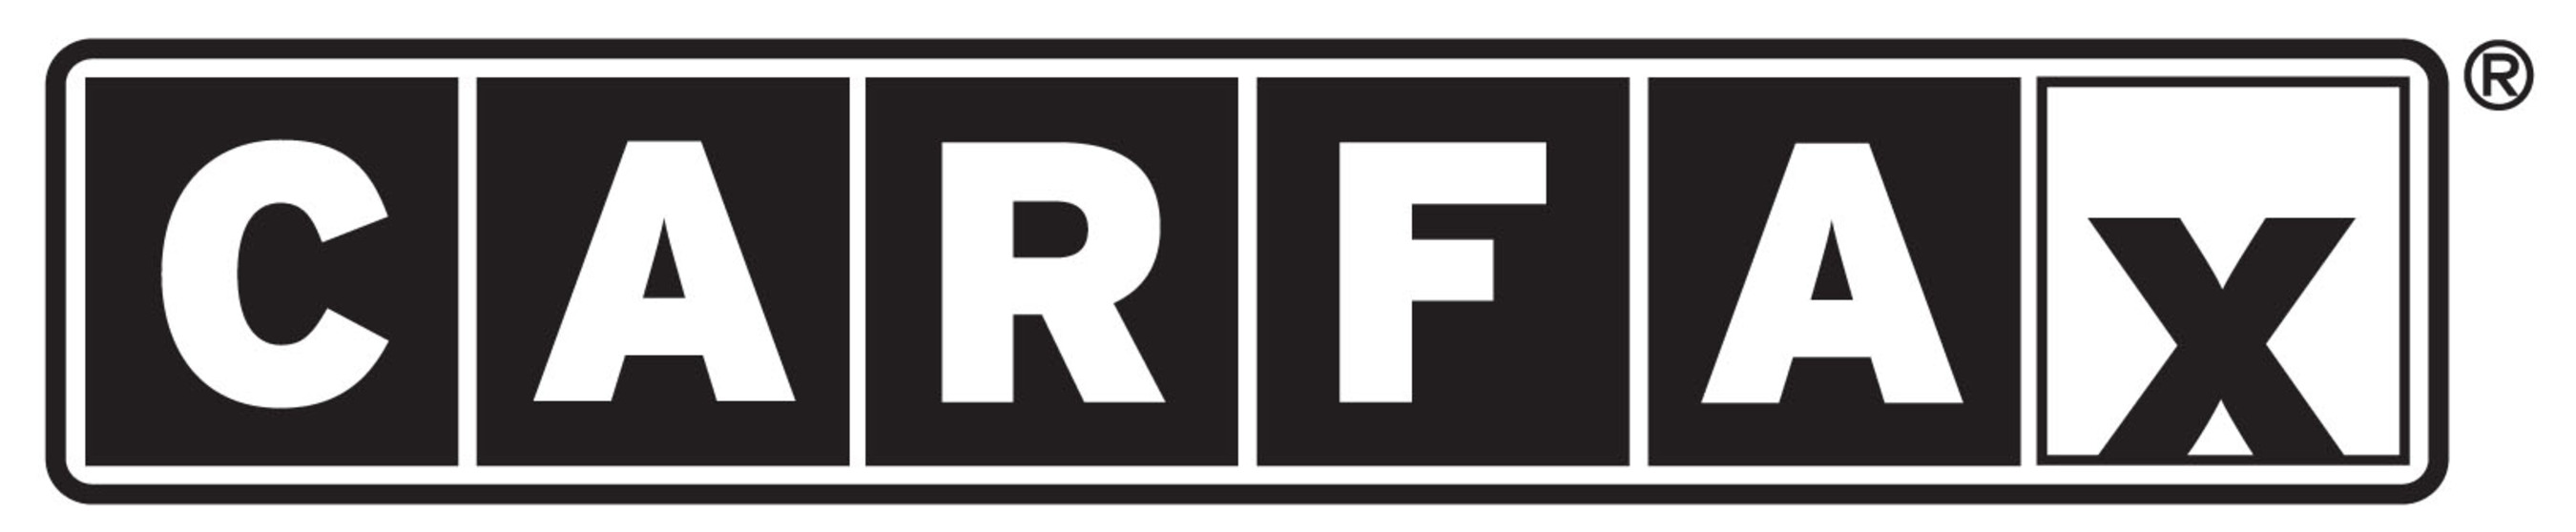 Carfax logo.